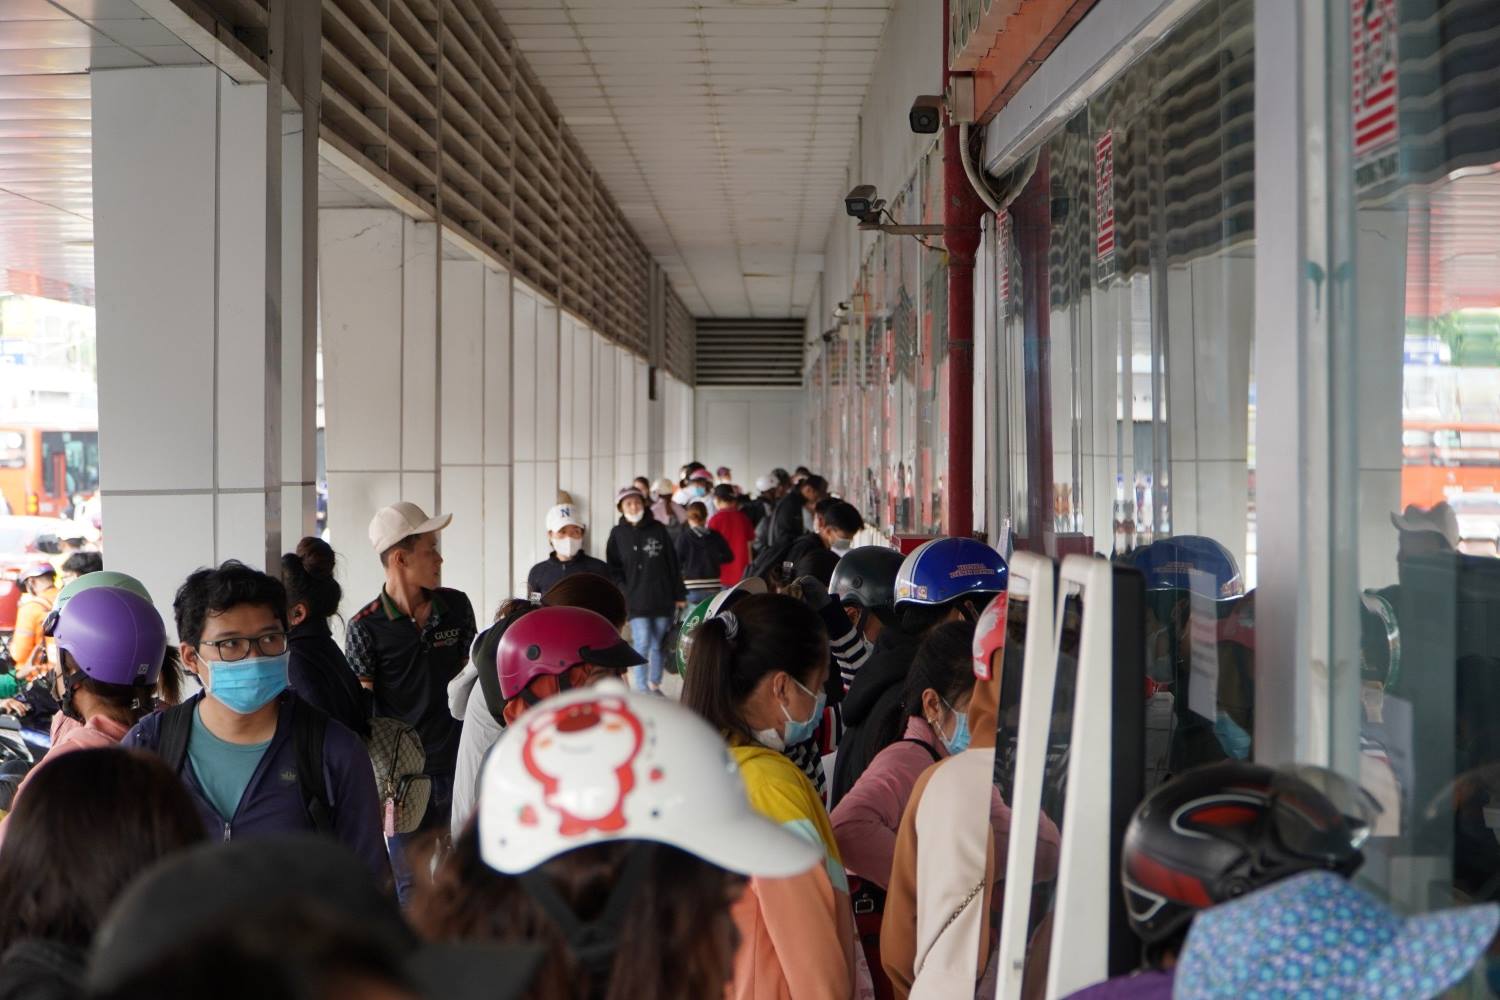 Thống kê trong ngày, tại bến có hơn 2.000 lượt xe xuất phát với khoảng 65.000 khách, gấp hơn hai lần ngày thường, tăng 10% so với cùng kỳ năm ngoái.  Lượng khách tăng cao khiến nhiều chặng về miền Tây đã hết vé giường nằm khiến nhiều người phải chuyển qua mua ghế ngồi. Trong đó, một số hãng xe như Phương Trang, doanh nghiệp chiếm hơn 50% tổng lượng khách ở bến Miền Tây, chiều nay thông báo đã không còn vé giường nằm một số tỉnh như Kiên Giang, Cà Mau, Sóc Trăng, Long Xuyên…